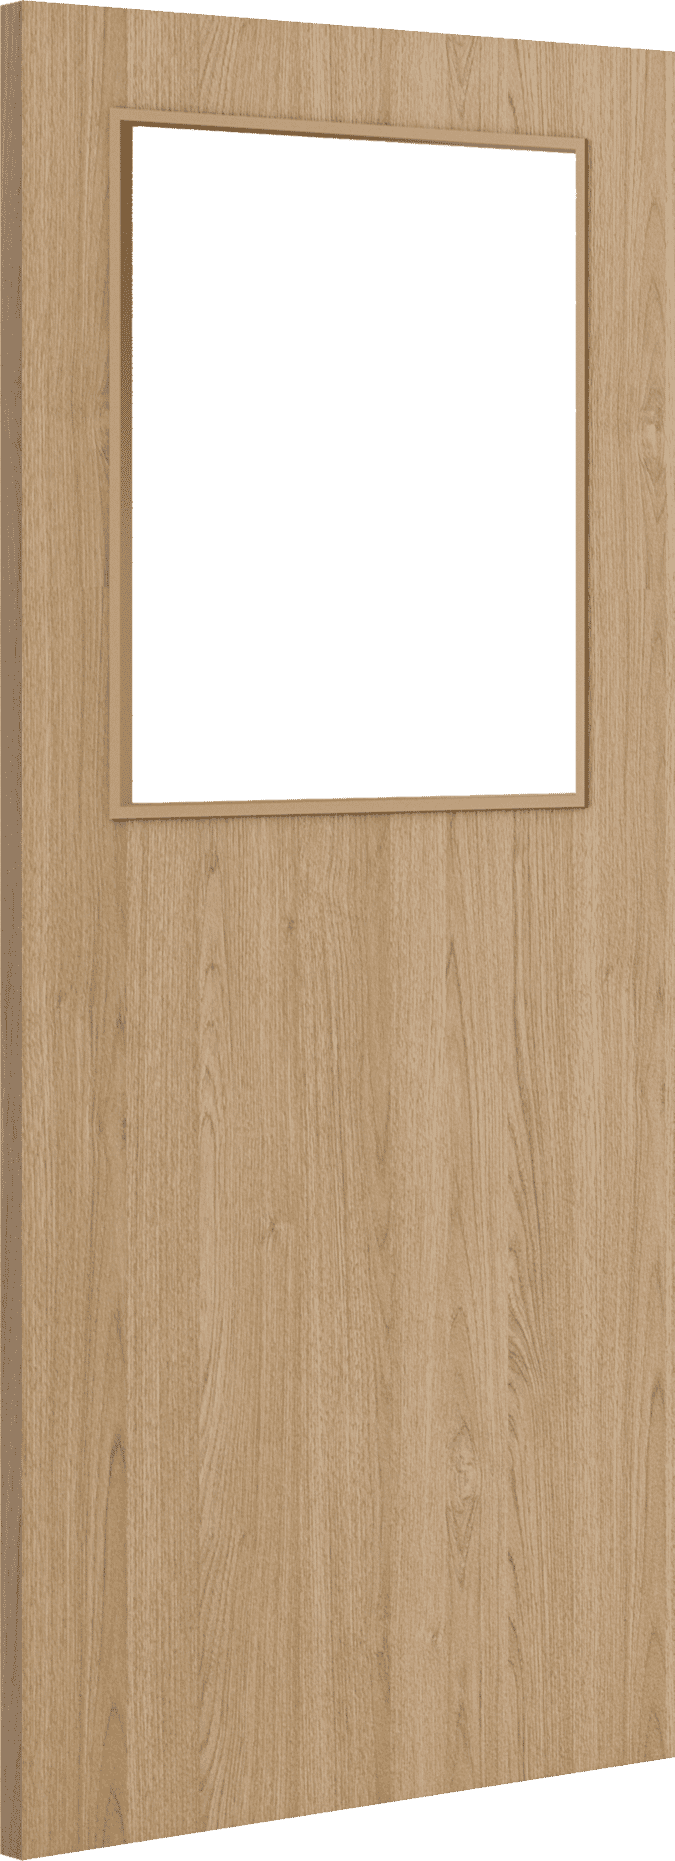 2040mm x 426mm x 44mm Architectural Oak 01 Clear Glazed - Prefinished FD30 Fire Door Blank